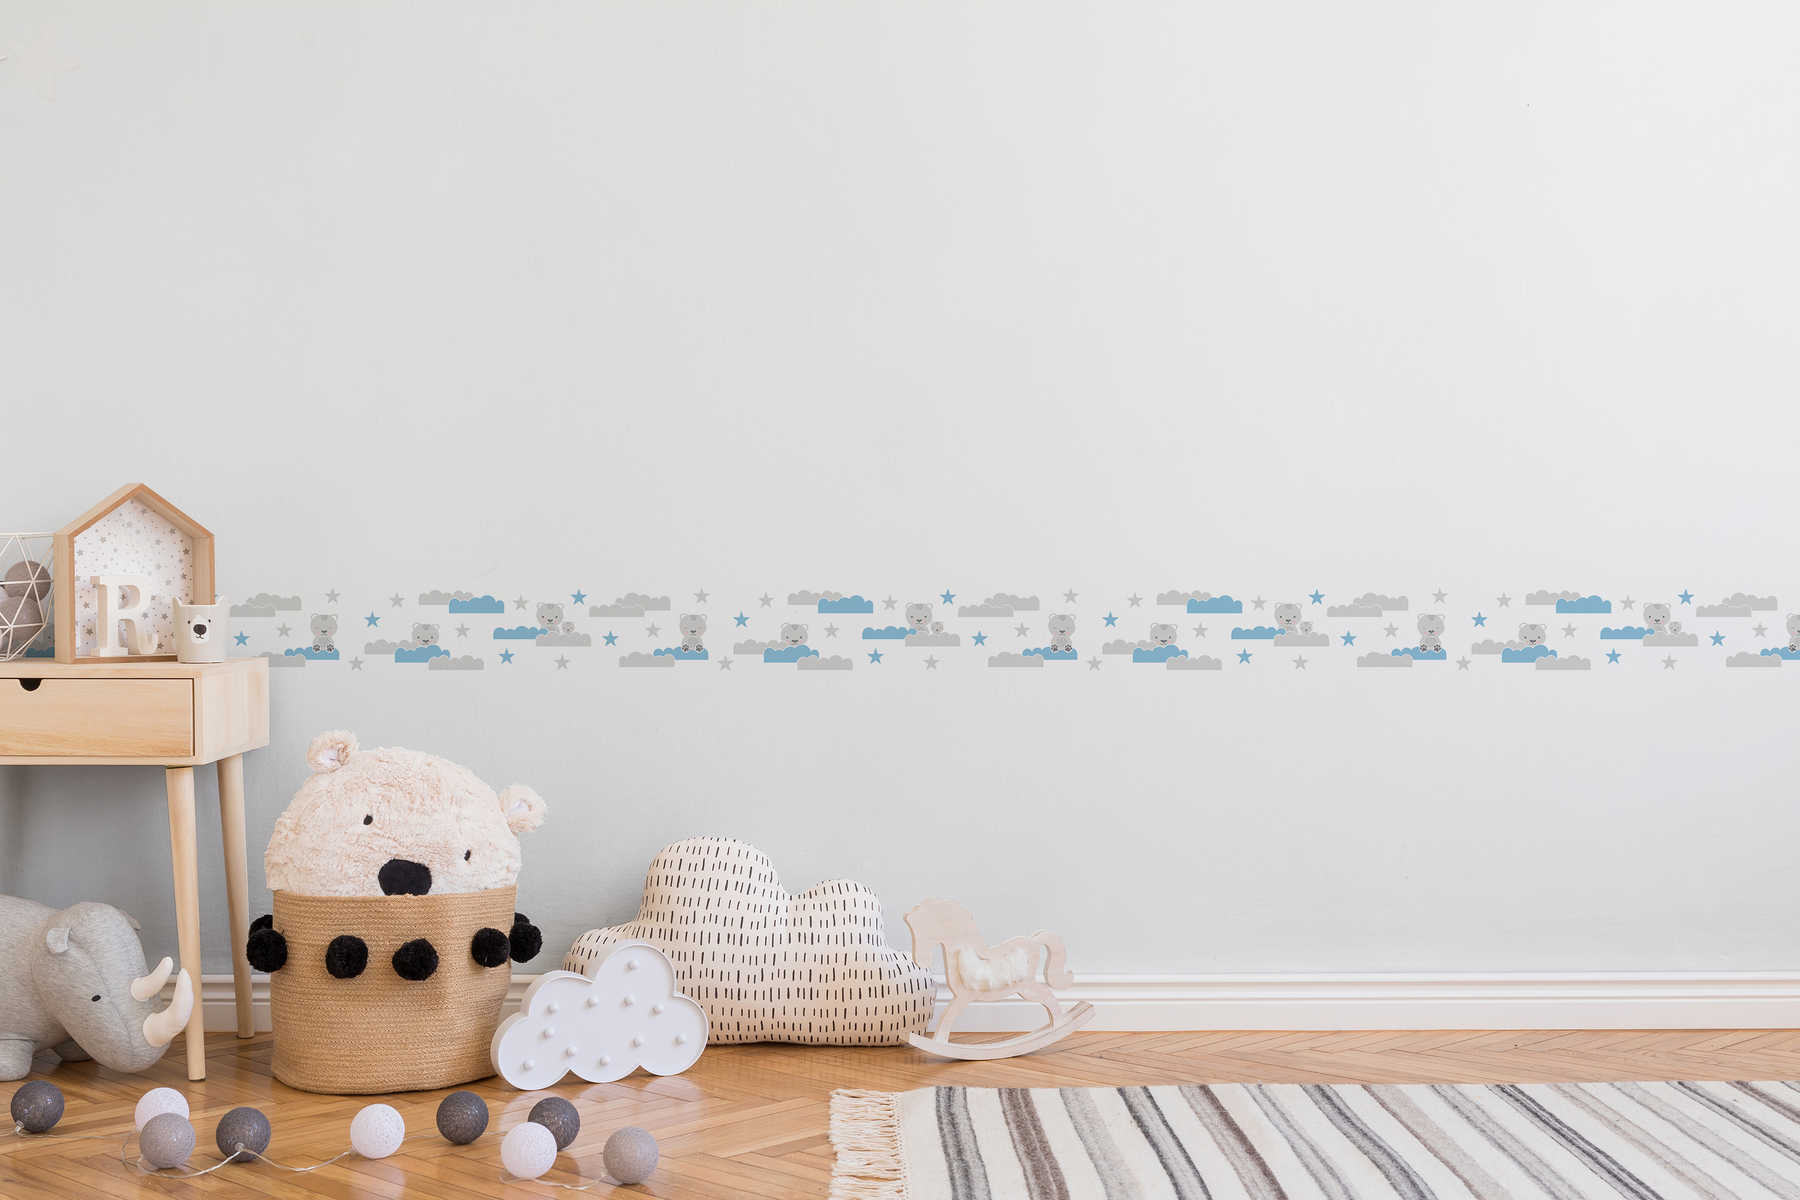             Selbstklebende Jungen Babyzimmer Bordüre "Bärenhimmel" – Grau, Blau, Weiß
        